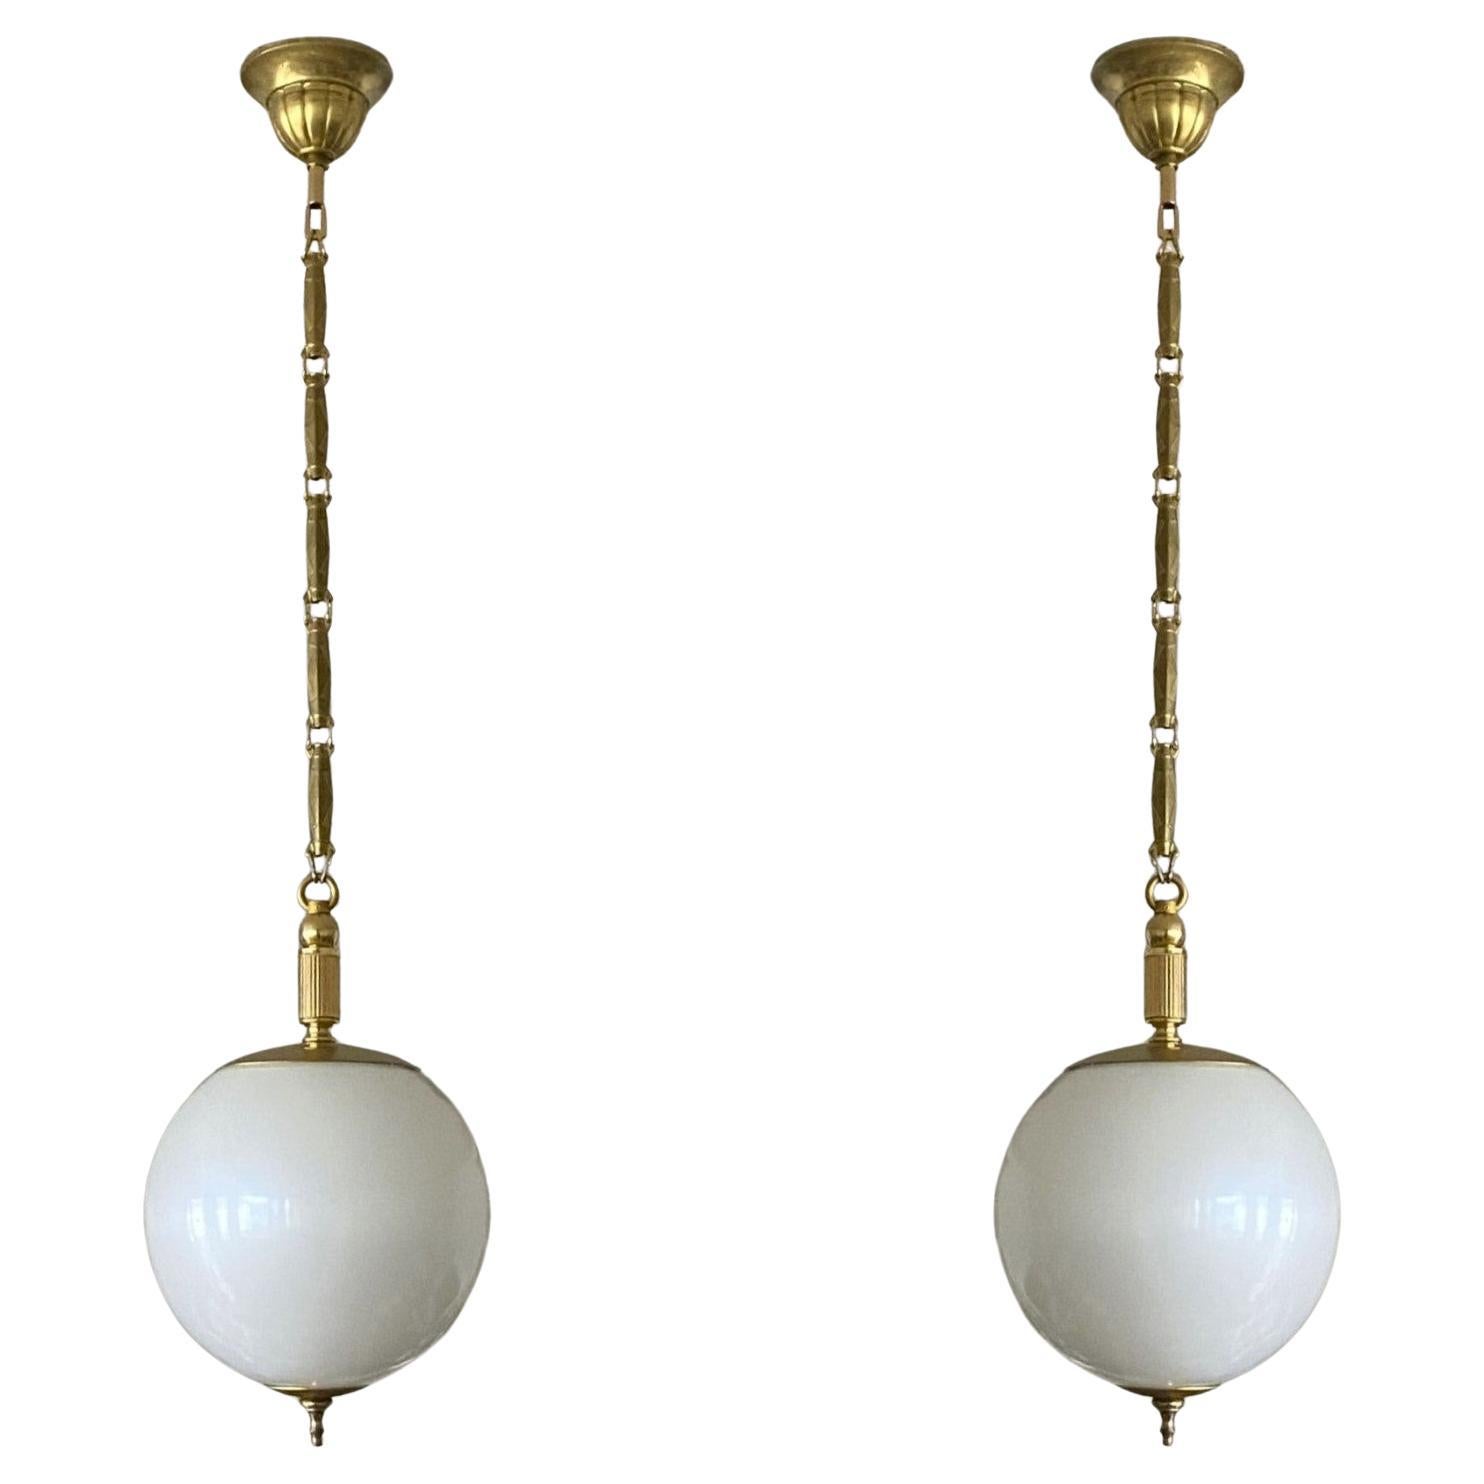 Ravissante paire de pendentifs globe en verre de Murano en optique perle, montures en laiton, chaîne et baldaquin, Italie, années 1960. Ces pendentifs magnifiques et rares ressemblent vraiment à une grosse perle suspendue au plafond. Avec une seule